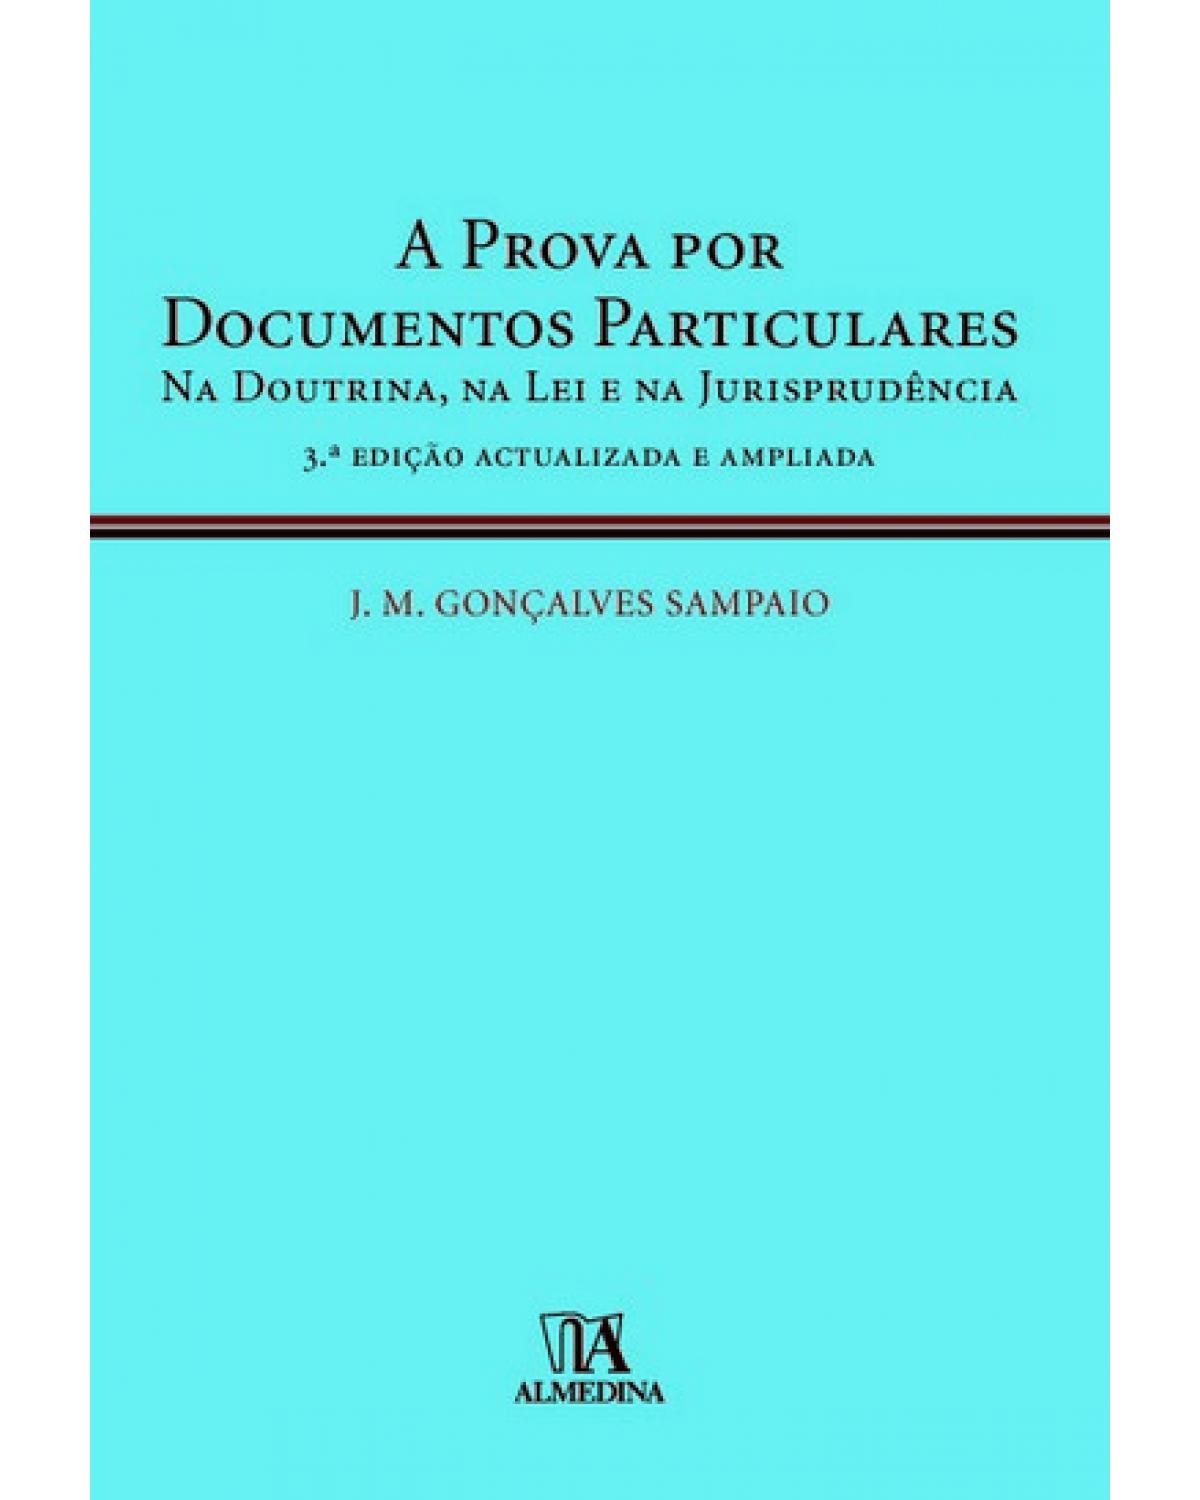 A prova por documentos particulares: Na doutrina, na lei e na jurisprudência - 3ª Edição | 2010